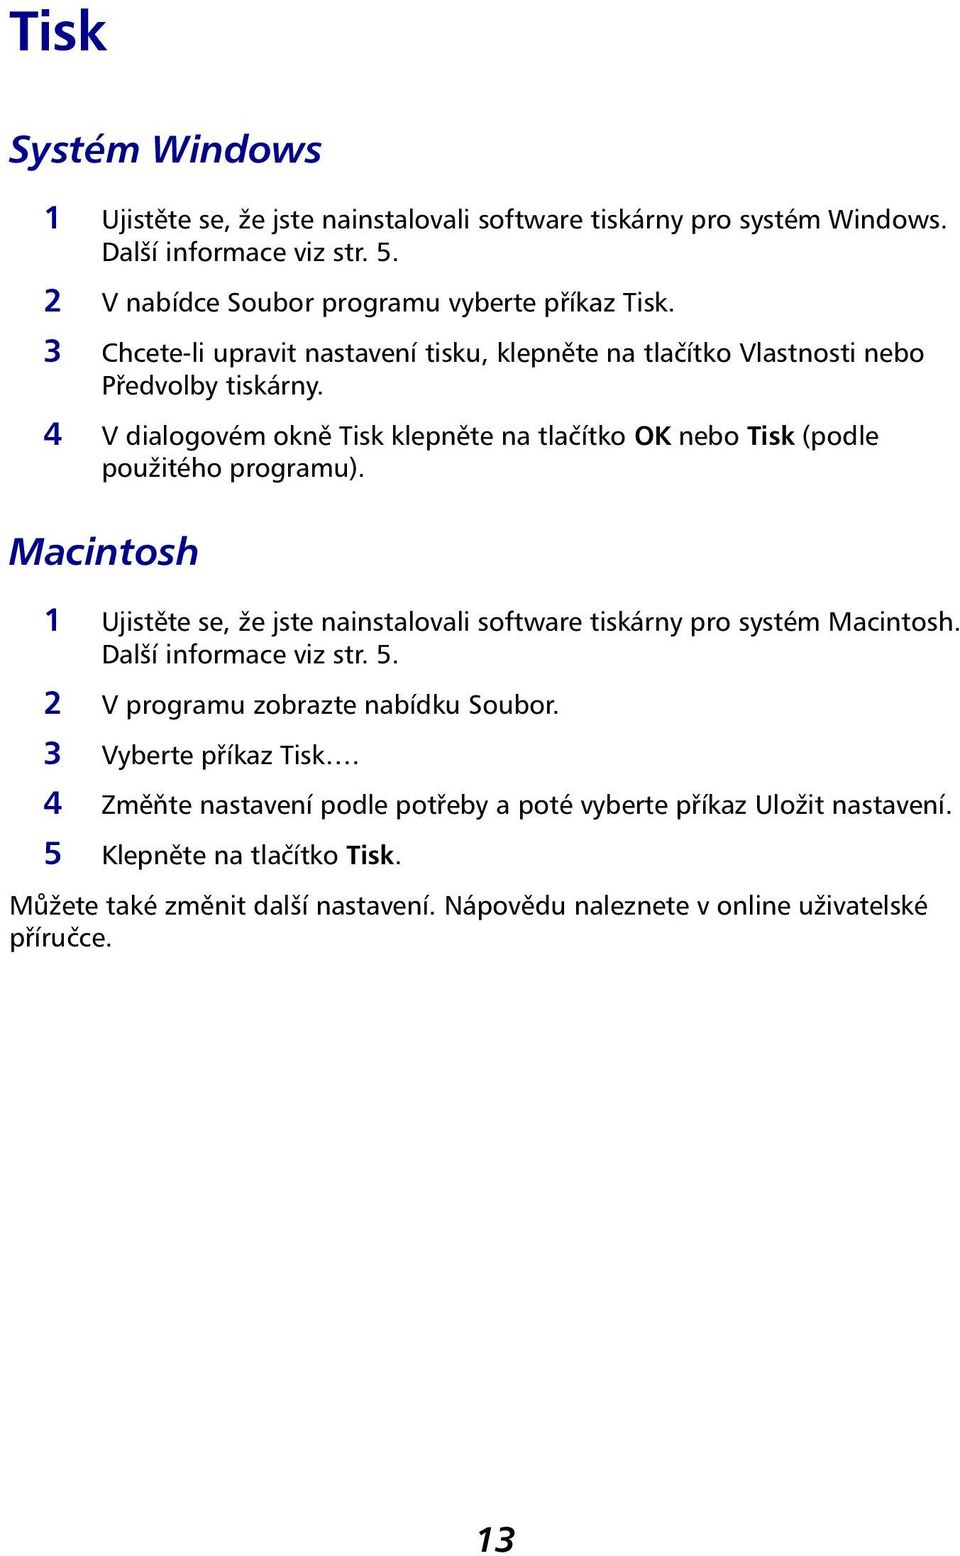 Macintosh 1 Ujistěte se, že jste nainstalovali software tiskárny pro systém Macintosh. Další informace viz str. 5. 2 V programu zobrazte nabídku Soubor. 3 Vyberte příkaz Tisk.